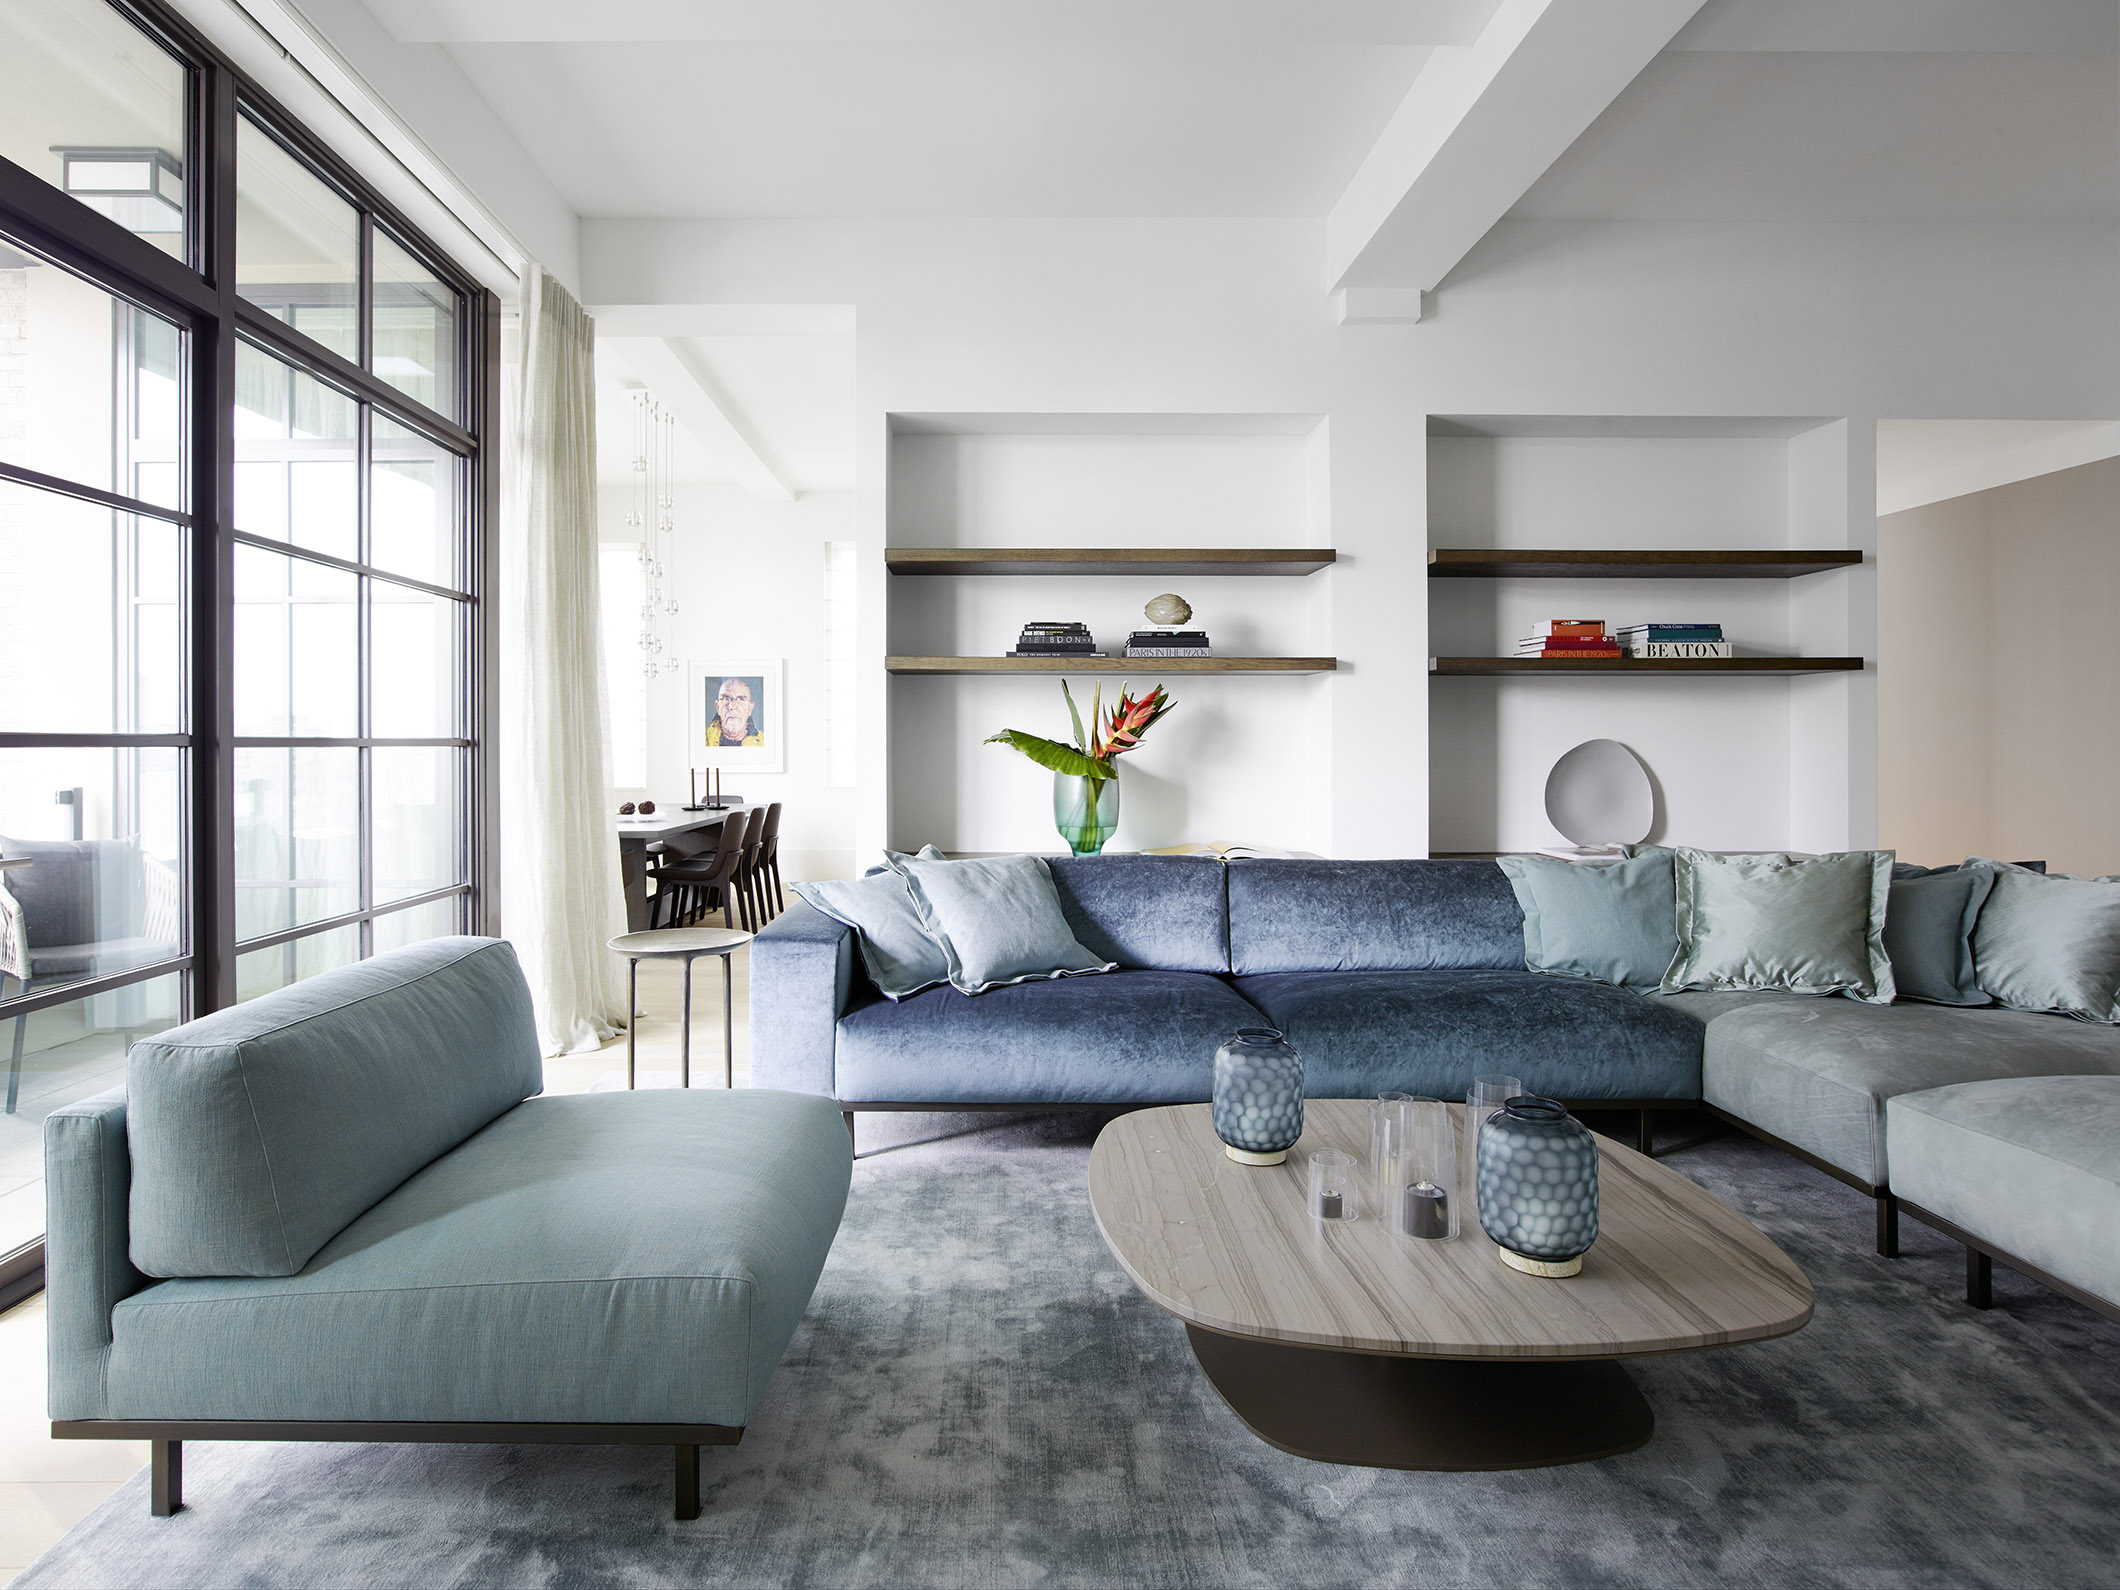 蓝色沙发表现出主人的浪漫情怀，背景展示架又使整个客厅空间富有层次。